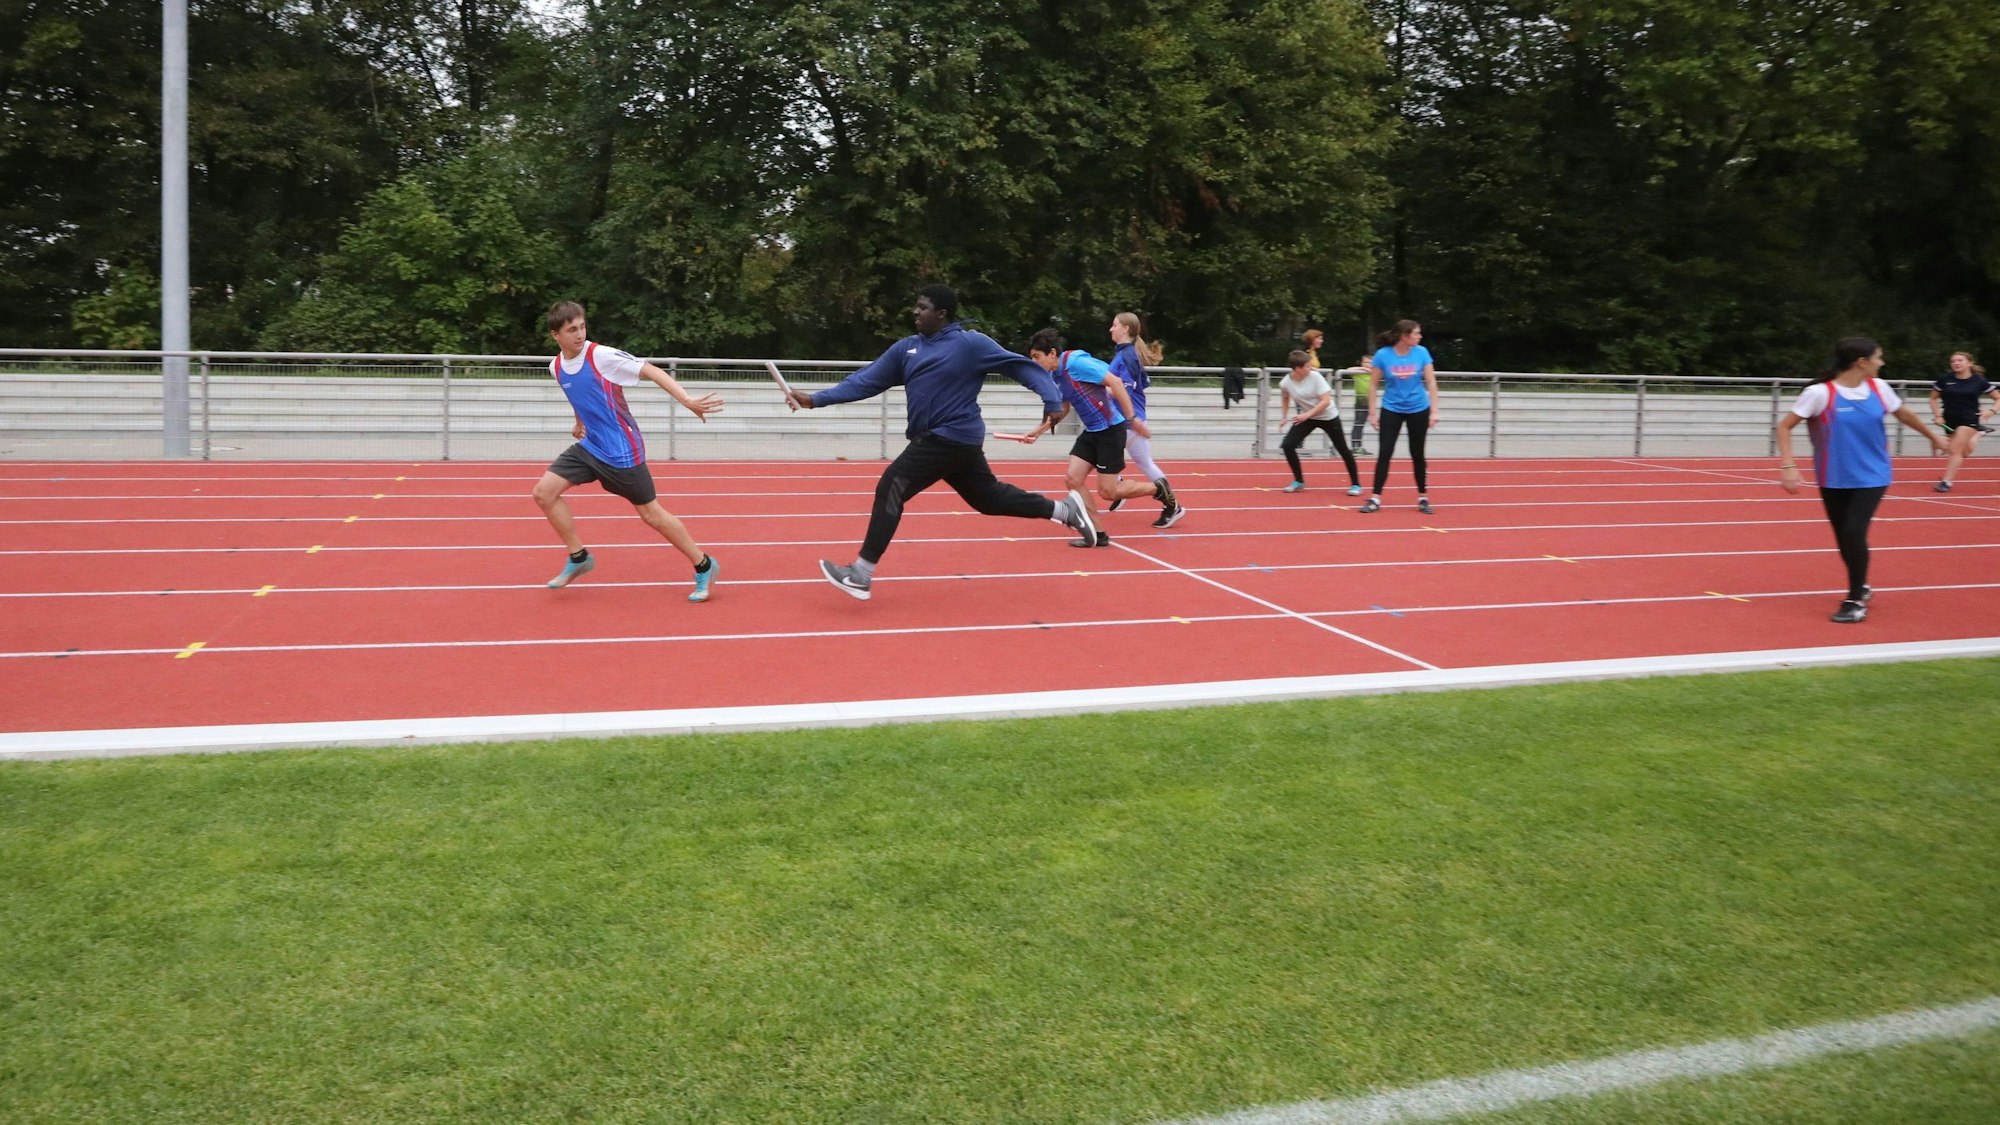 Staffellauf der GSV Leichtathleten zur Einweihung des neuen Sportplatzes. Auf dem Bild übergibt ein Läufer den Staffelstab an seinen Vordermann.